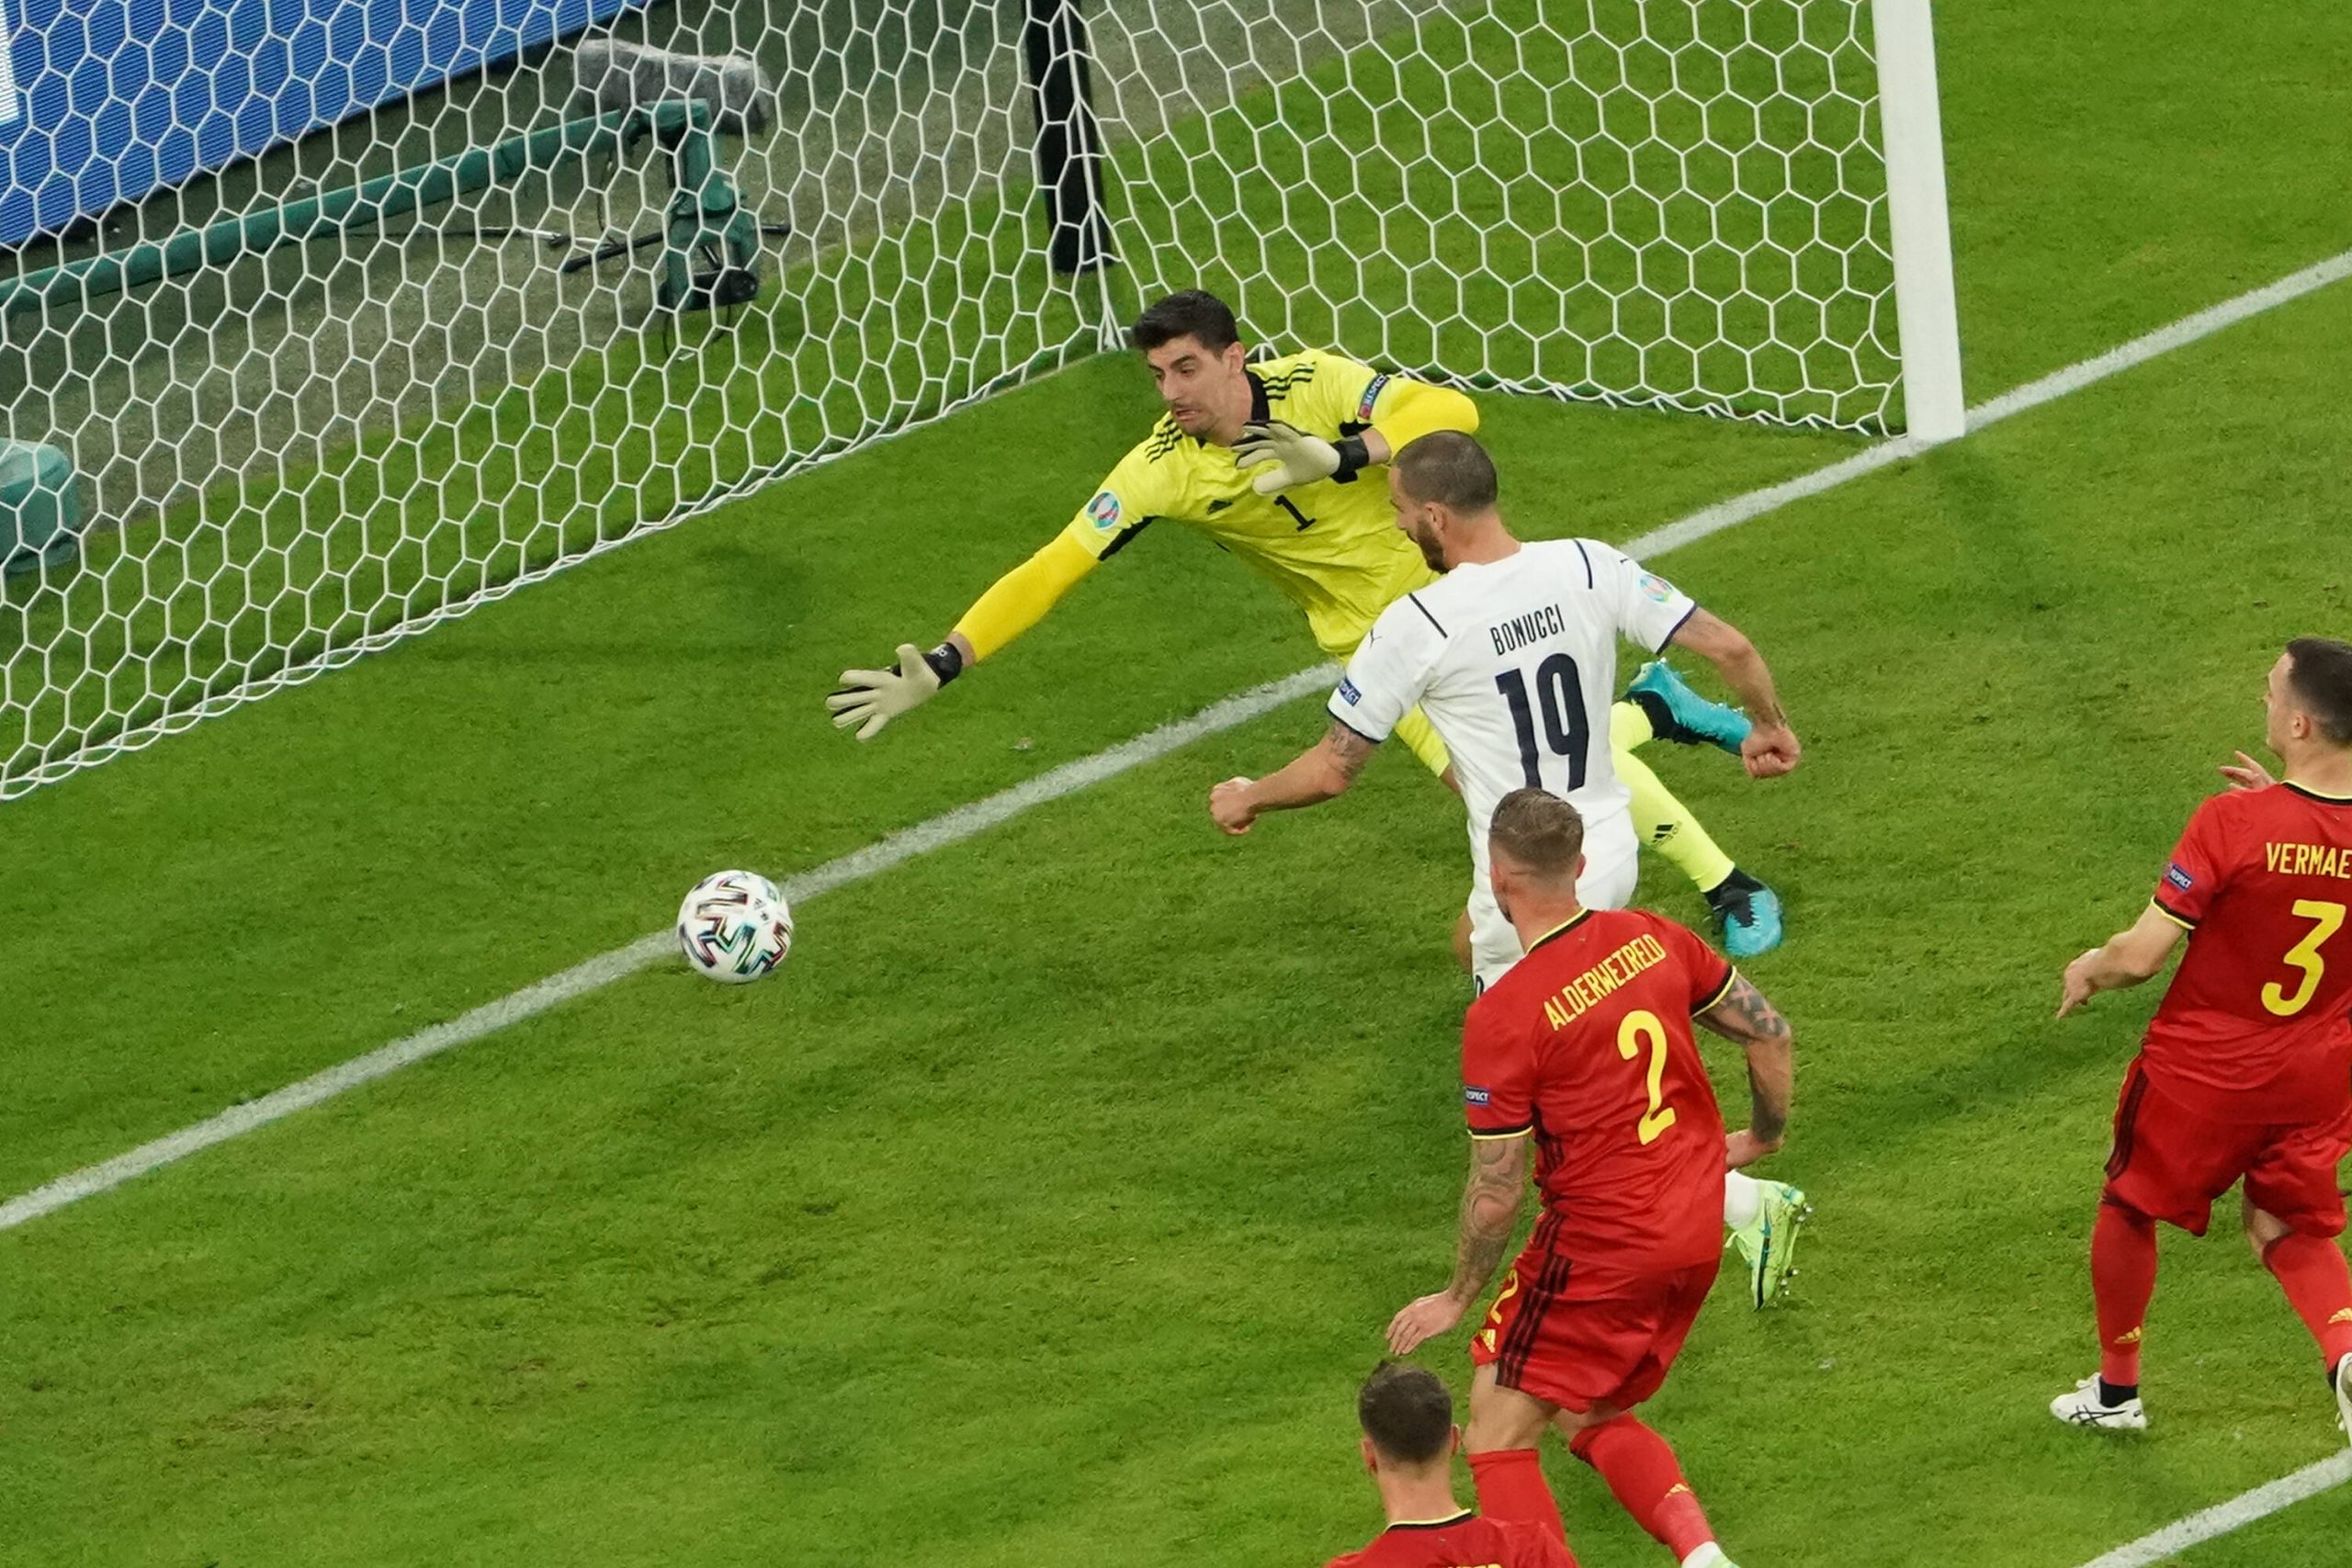 Italien setzte im Viertelfinale auf weiße Trikots – und gewann gegen rot gekleidete Belgier.